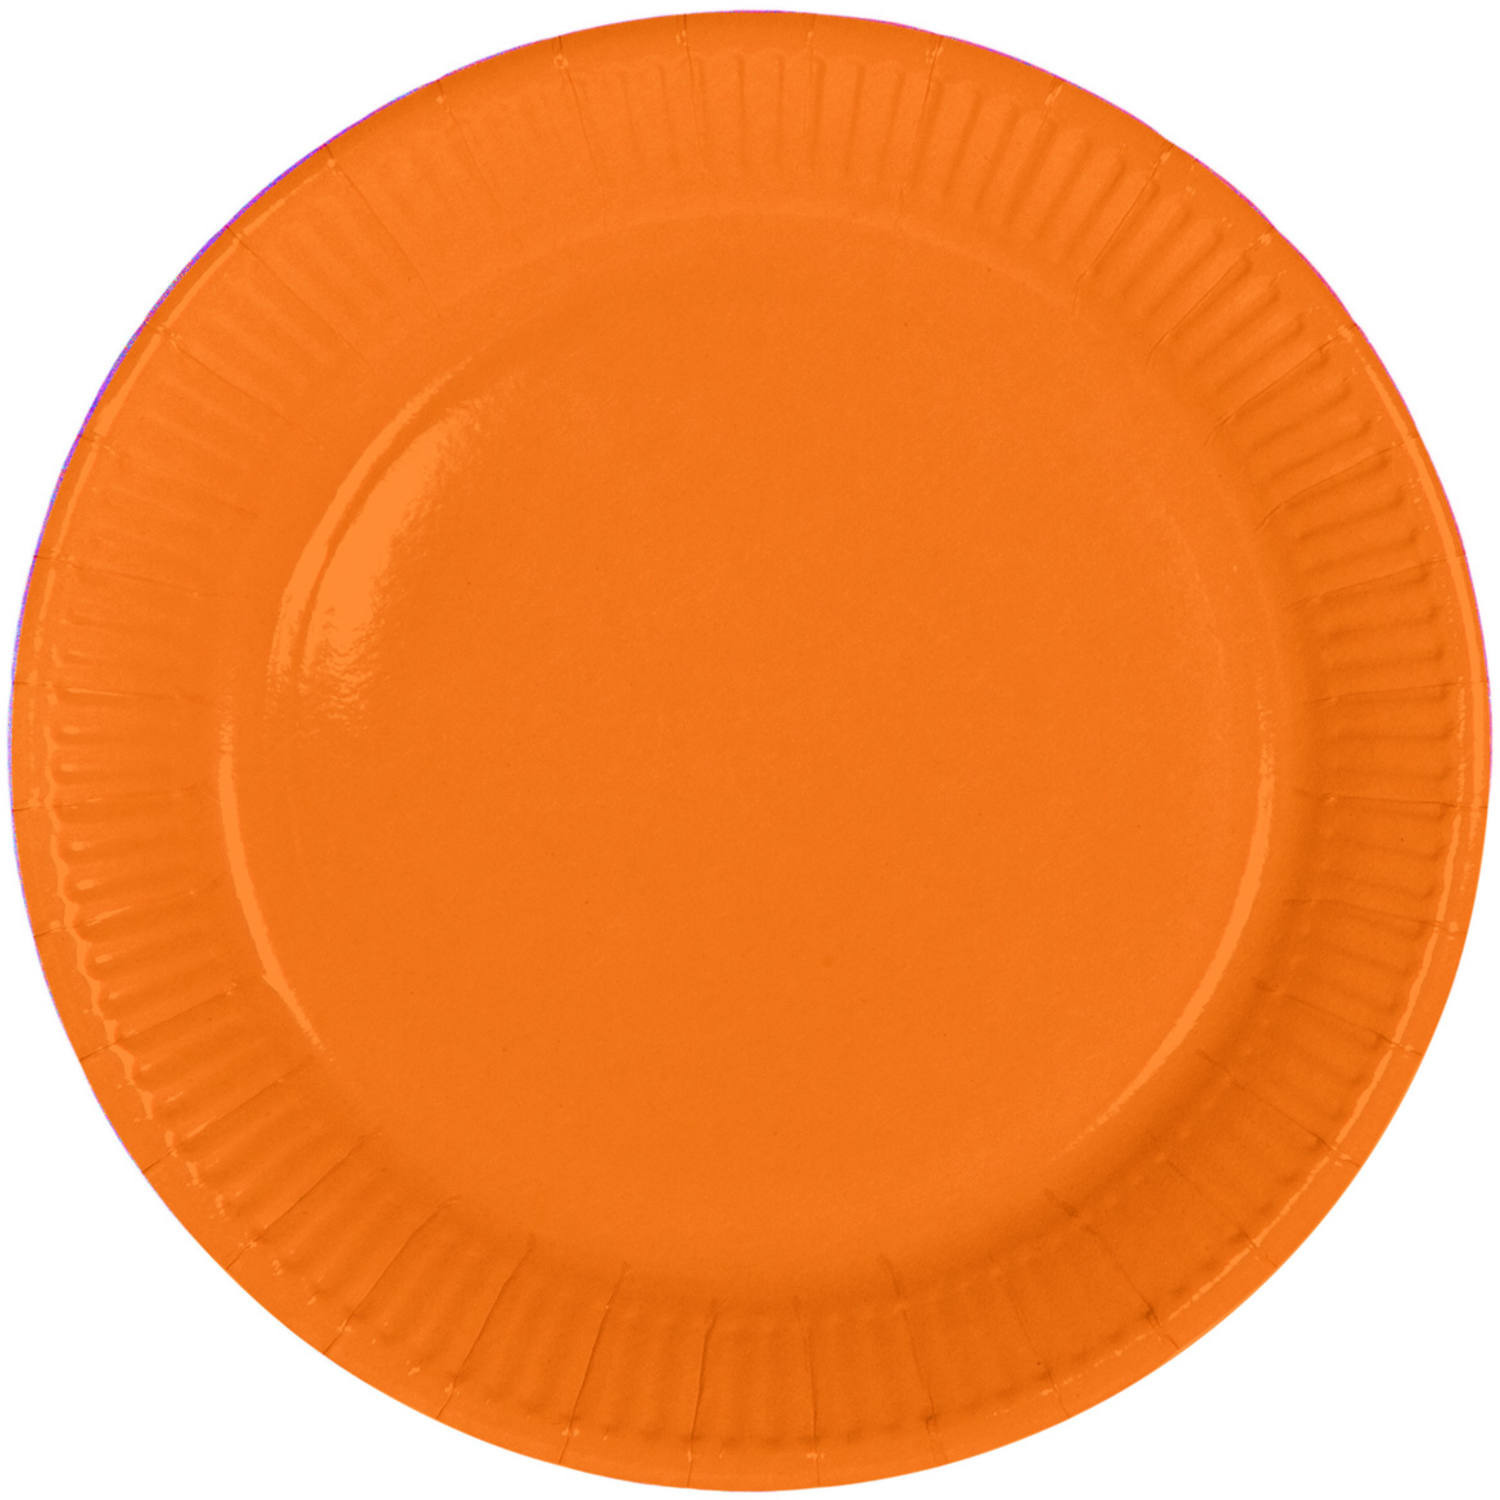 8x stuks party gebak/eet bordjes van papier oranje 23 cm -